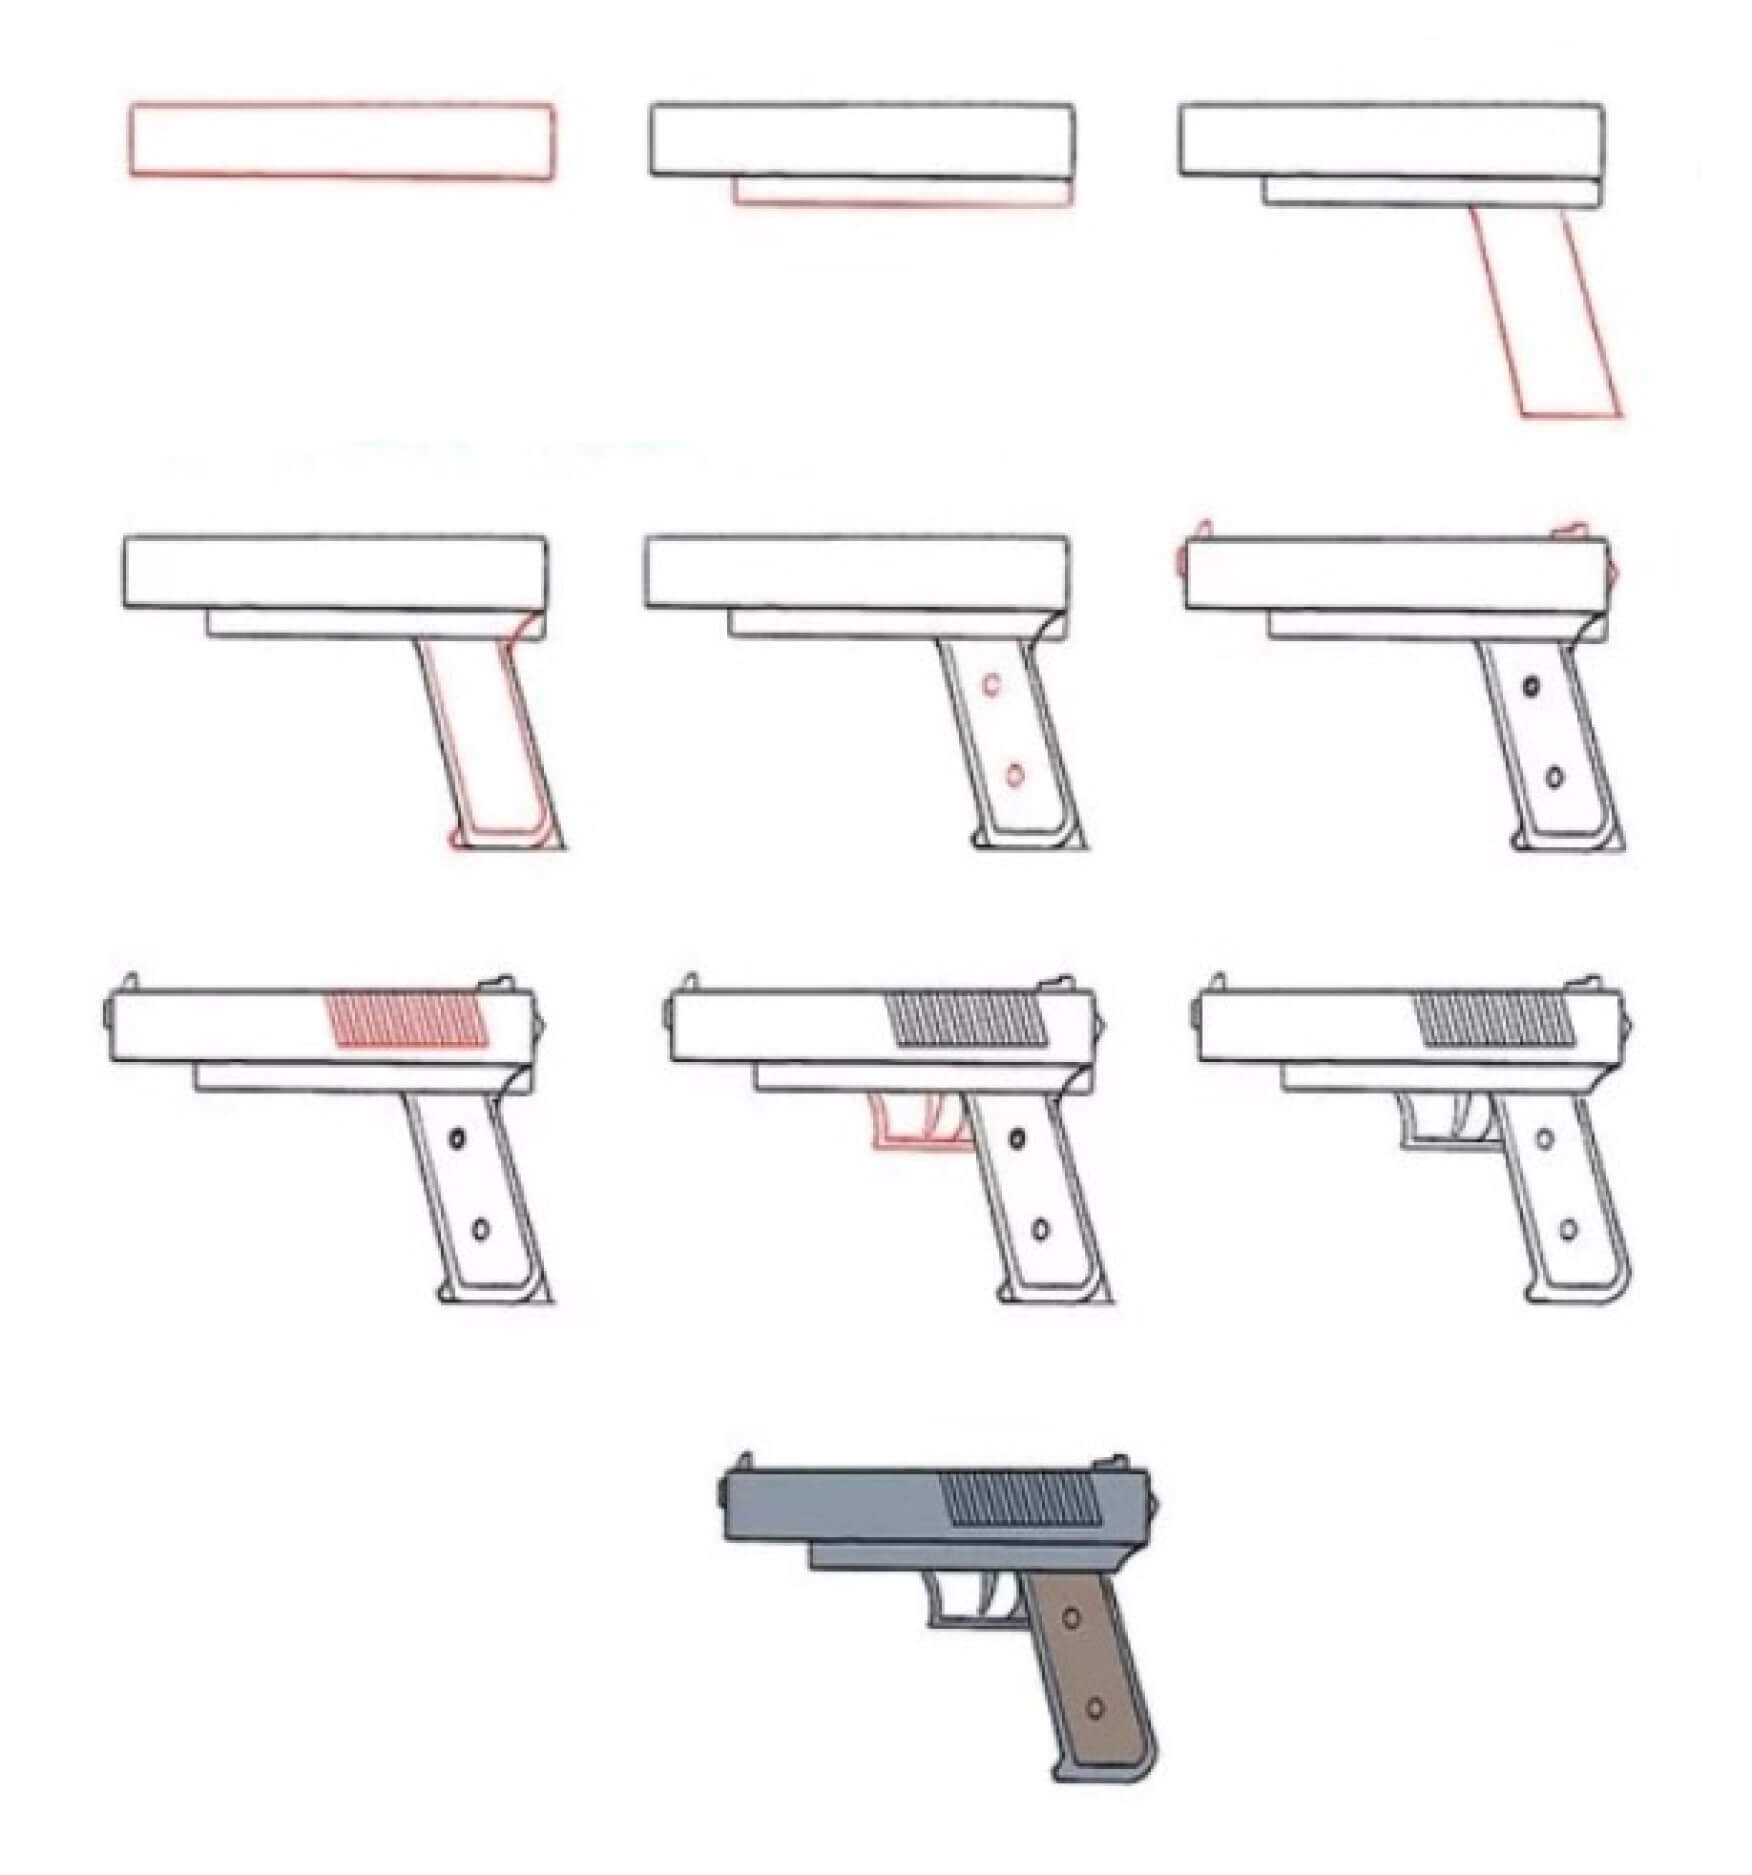 Pistole (4) zeichnen ideen